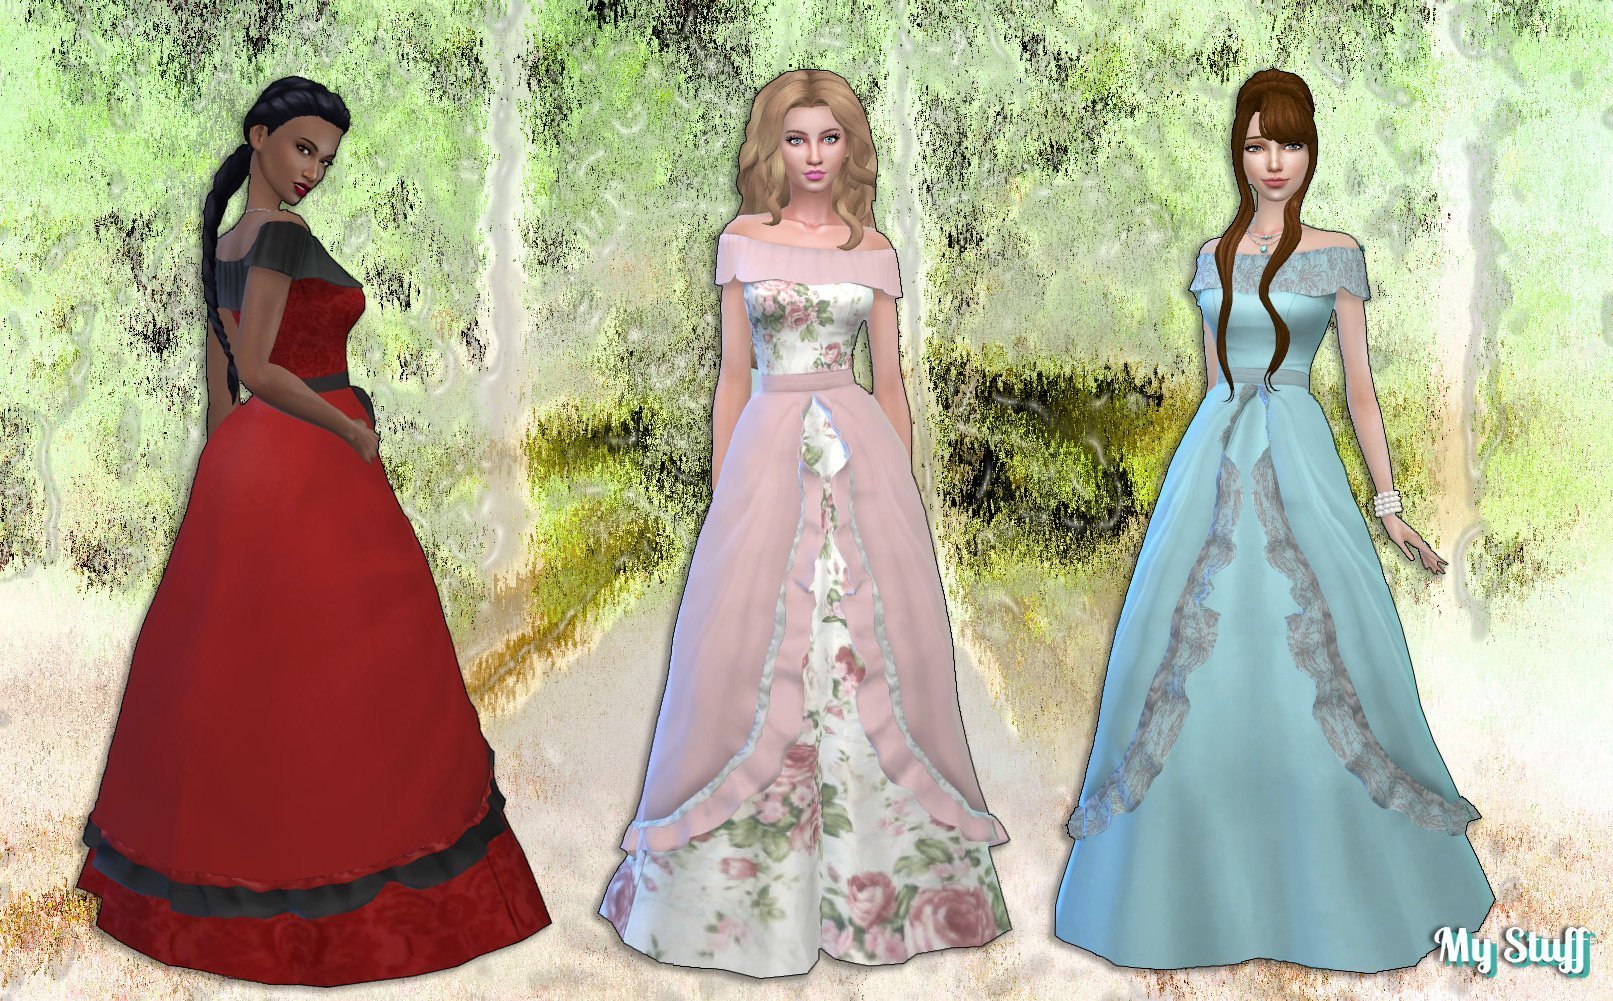 Fairy tale Dress